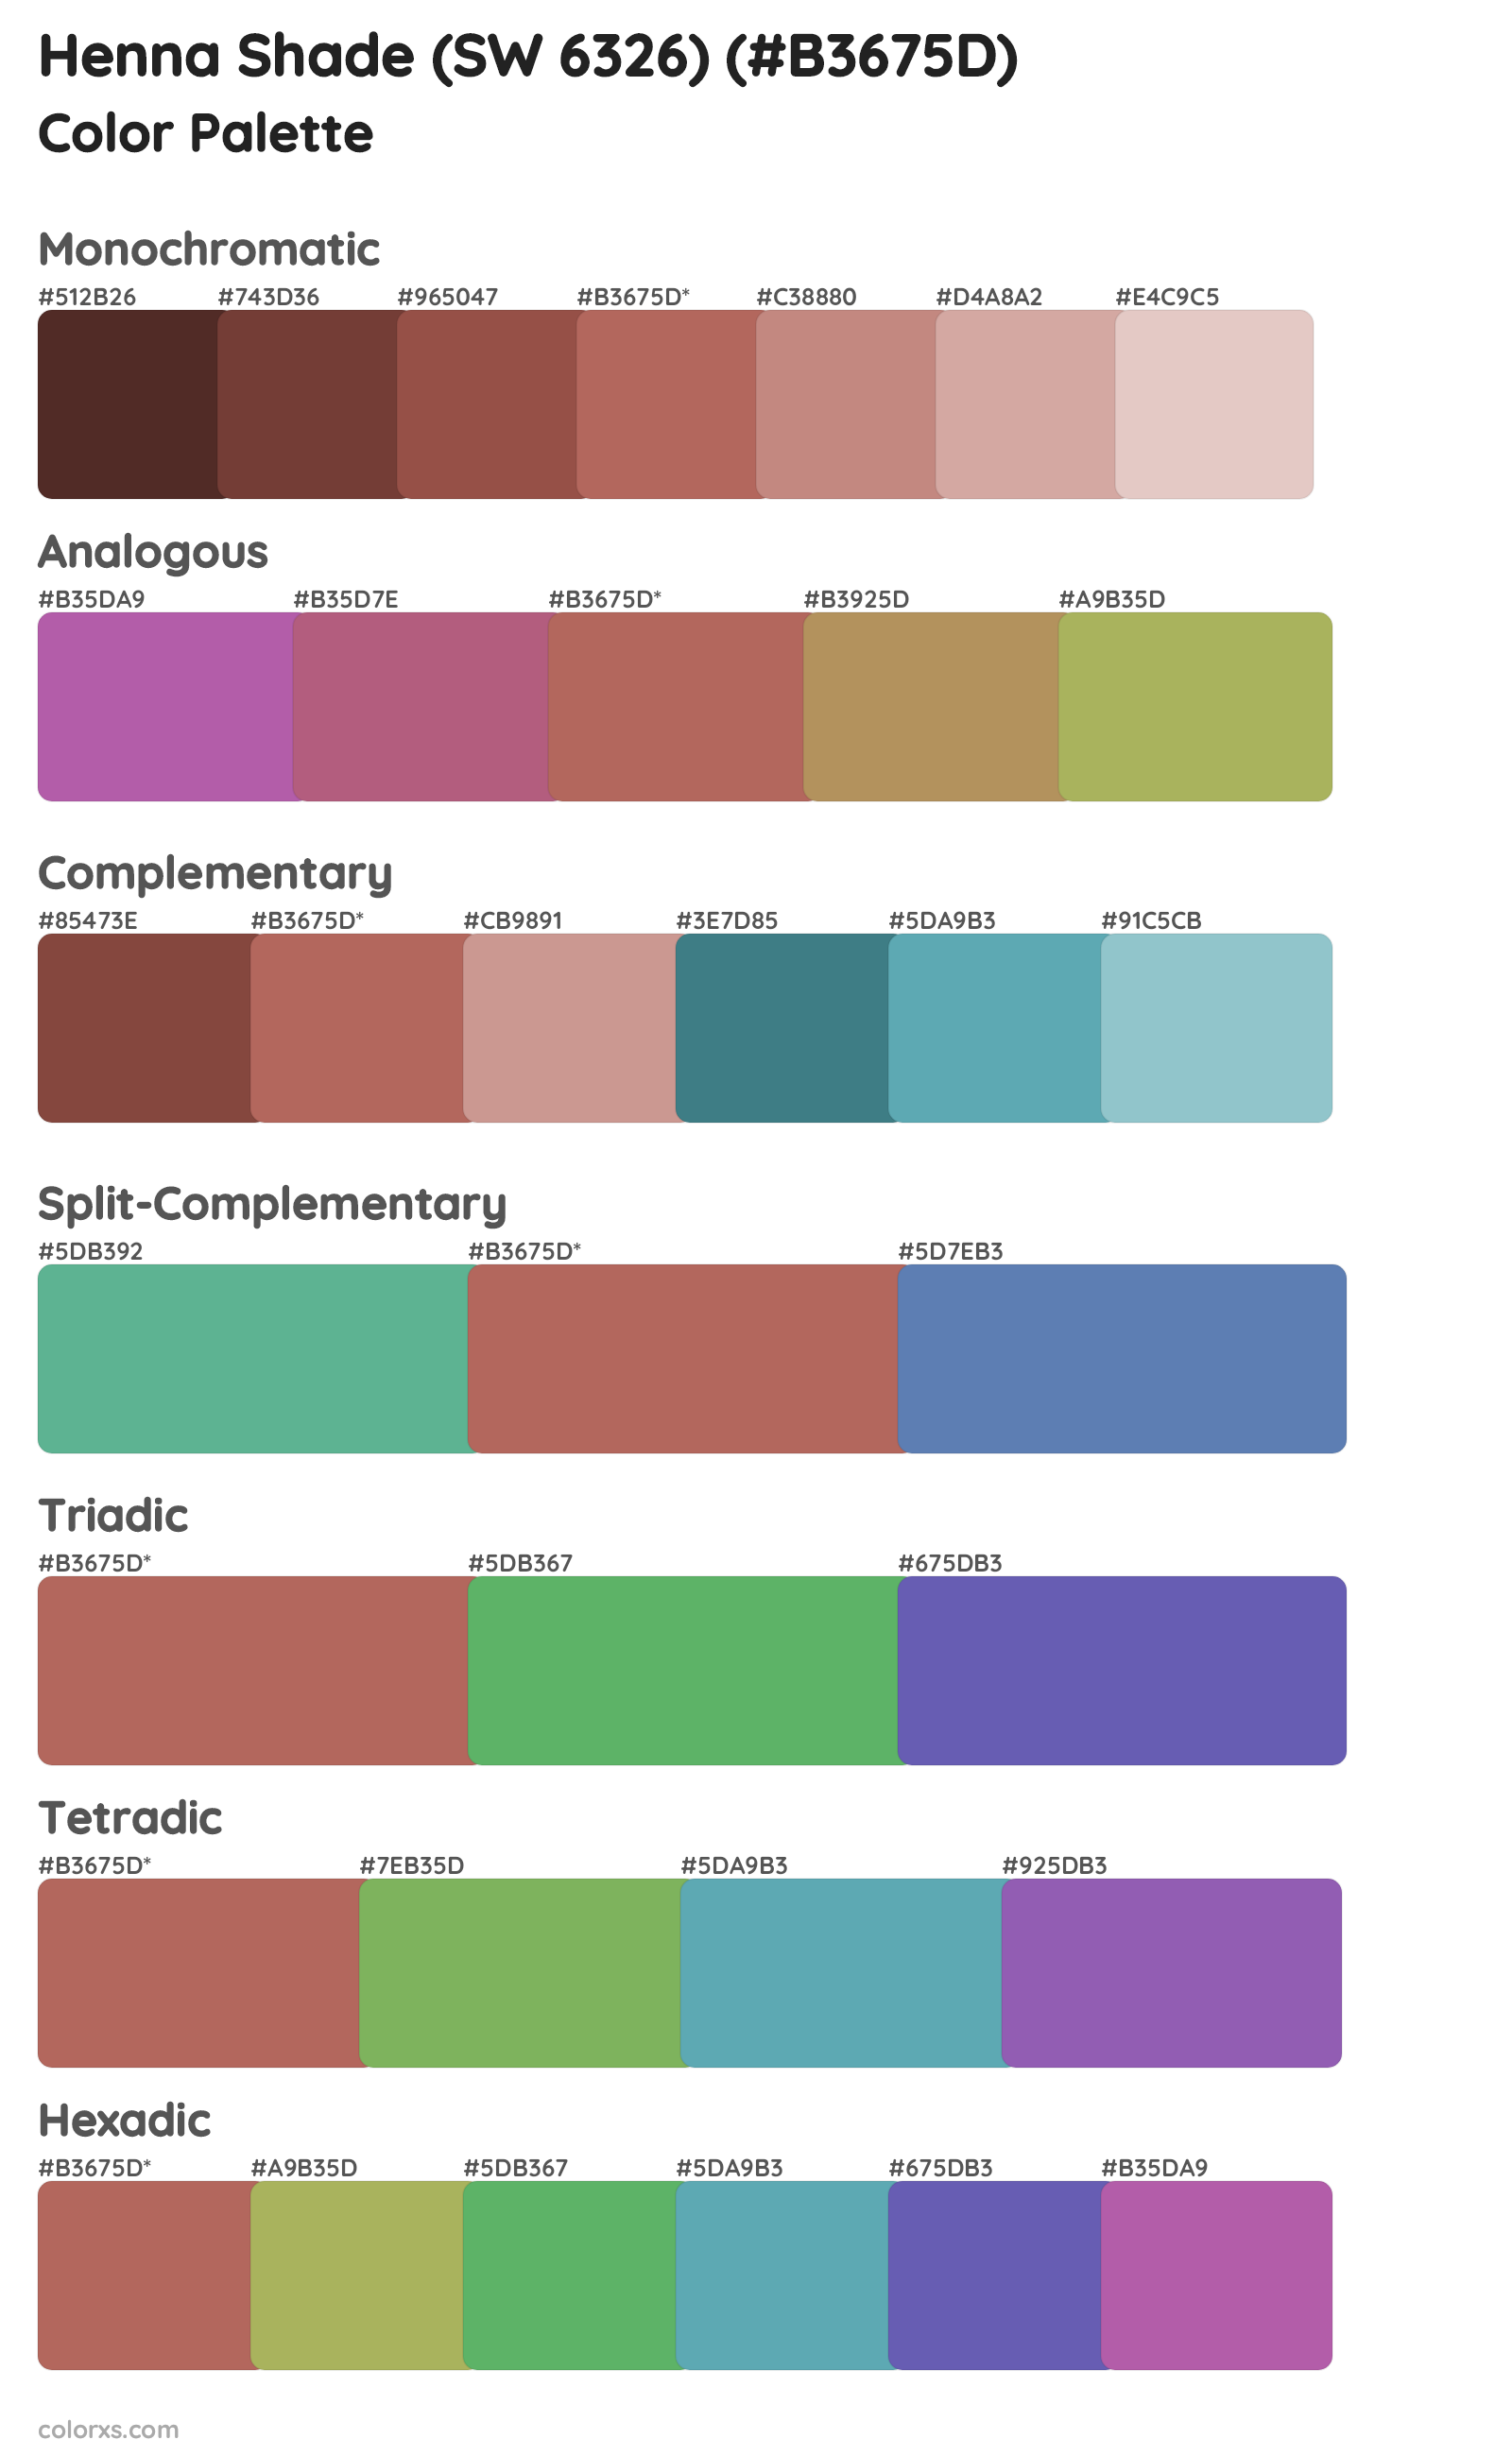 Henna Shade (SW 6326) Color Scheme Palettes